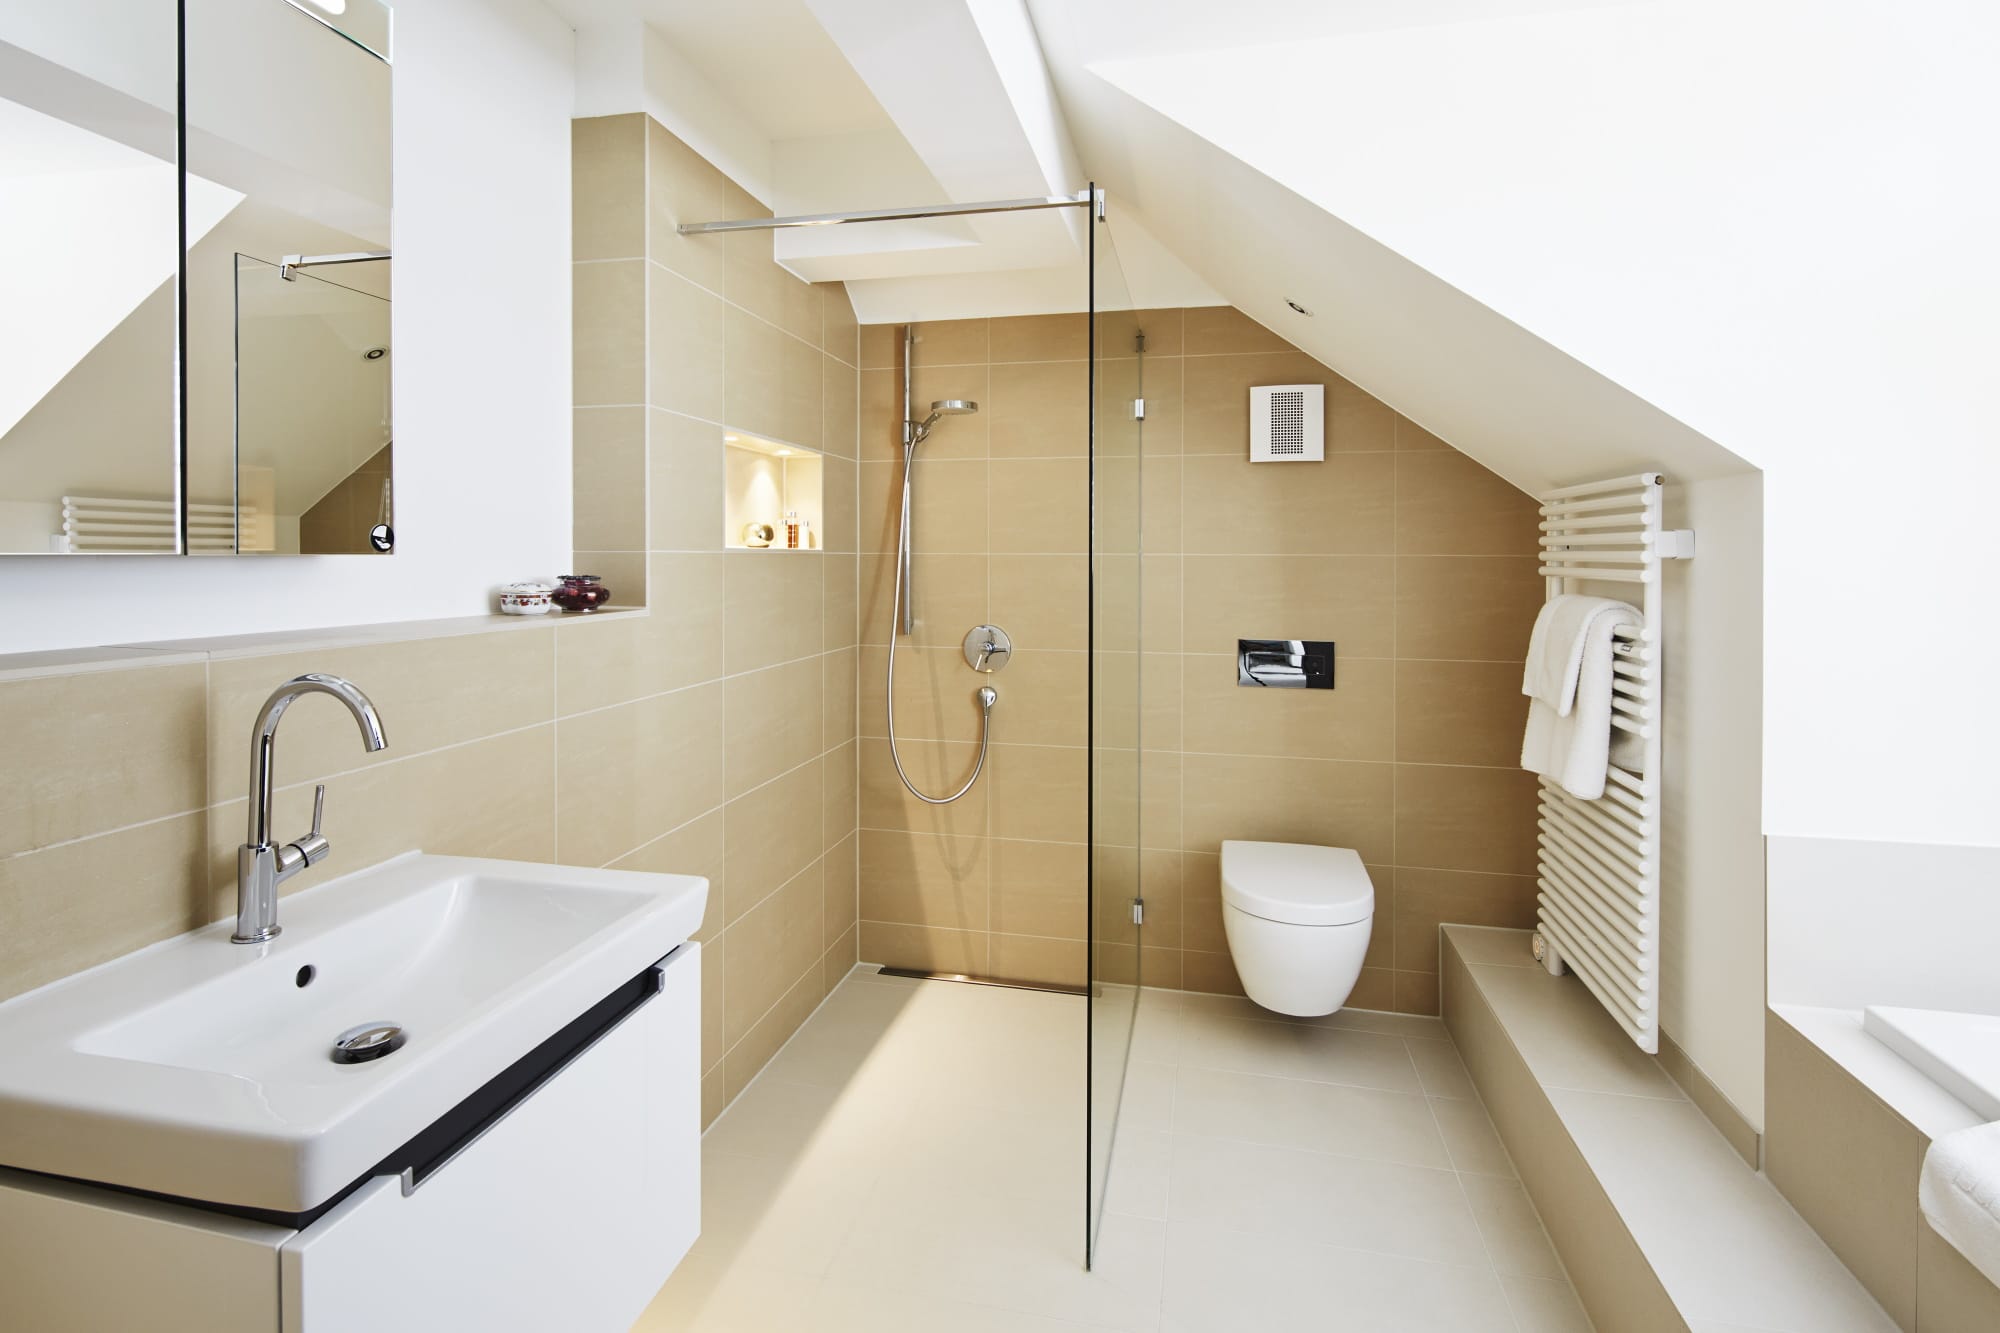 Badezimmer modern mit Dachshräge - Haus Design Inneneinrichtung Luxus Villa ATHERTON von Baufritz - HausbauDirekt.de